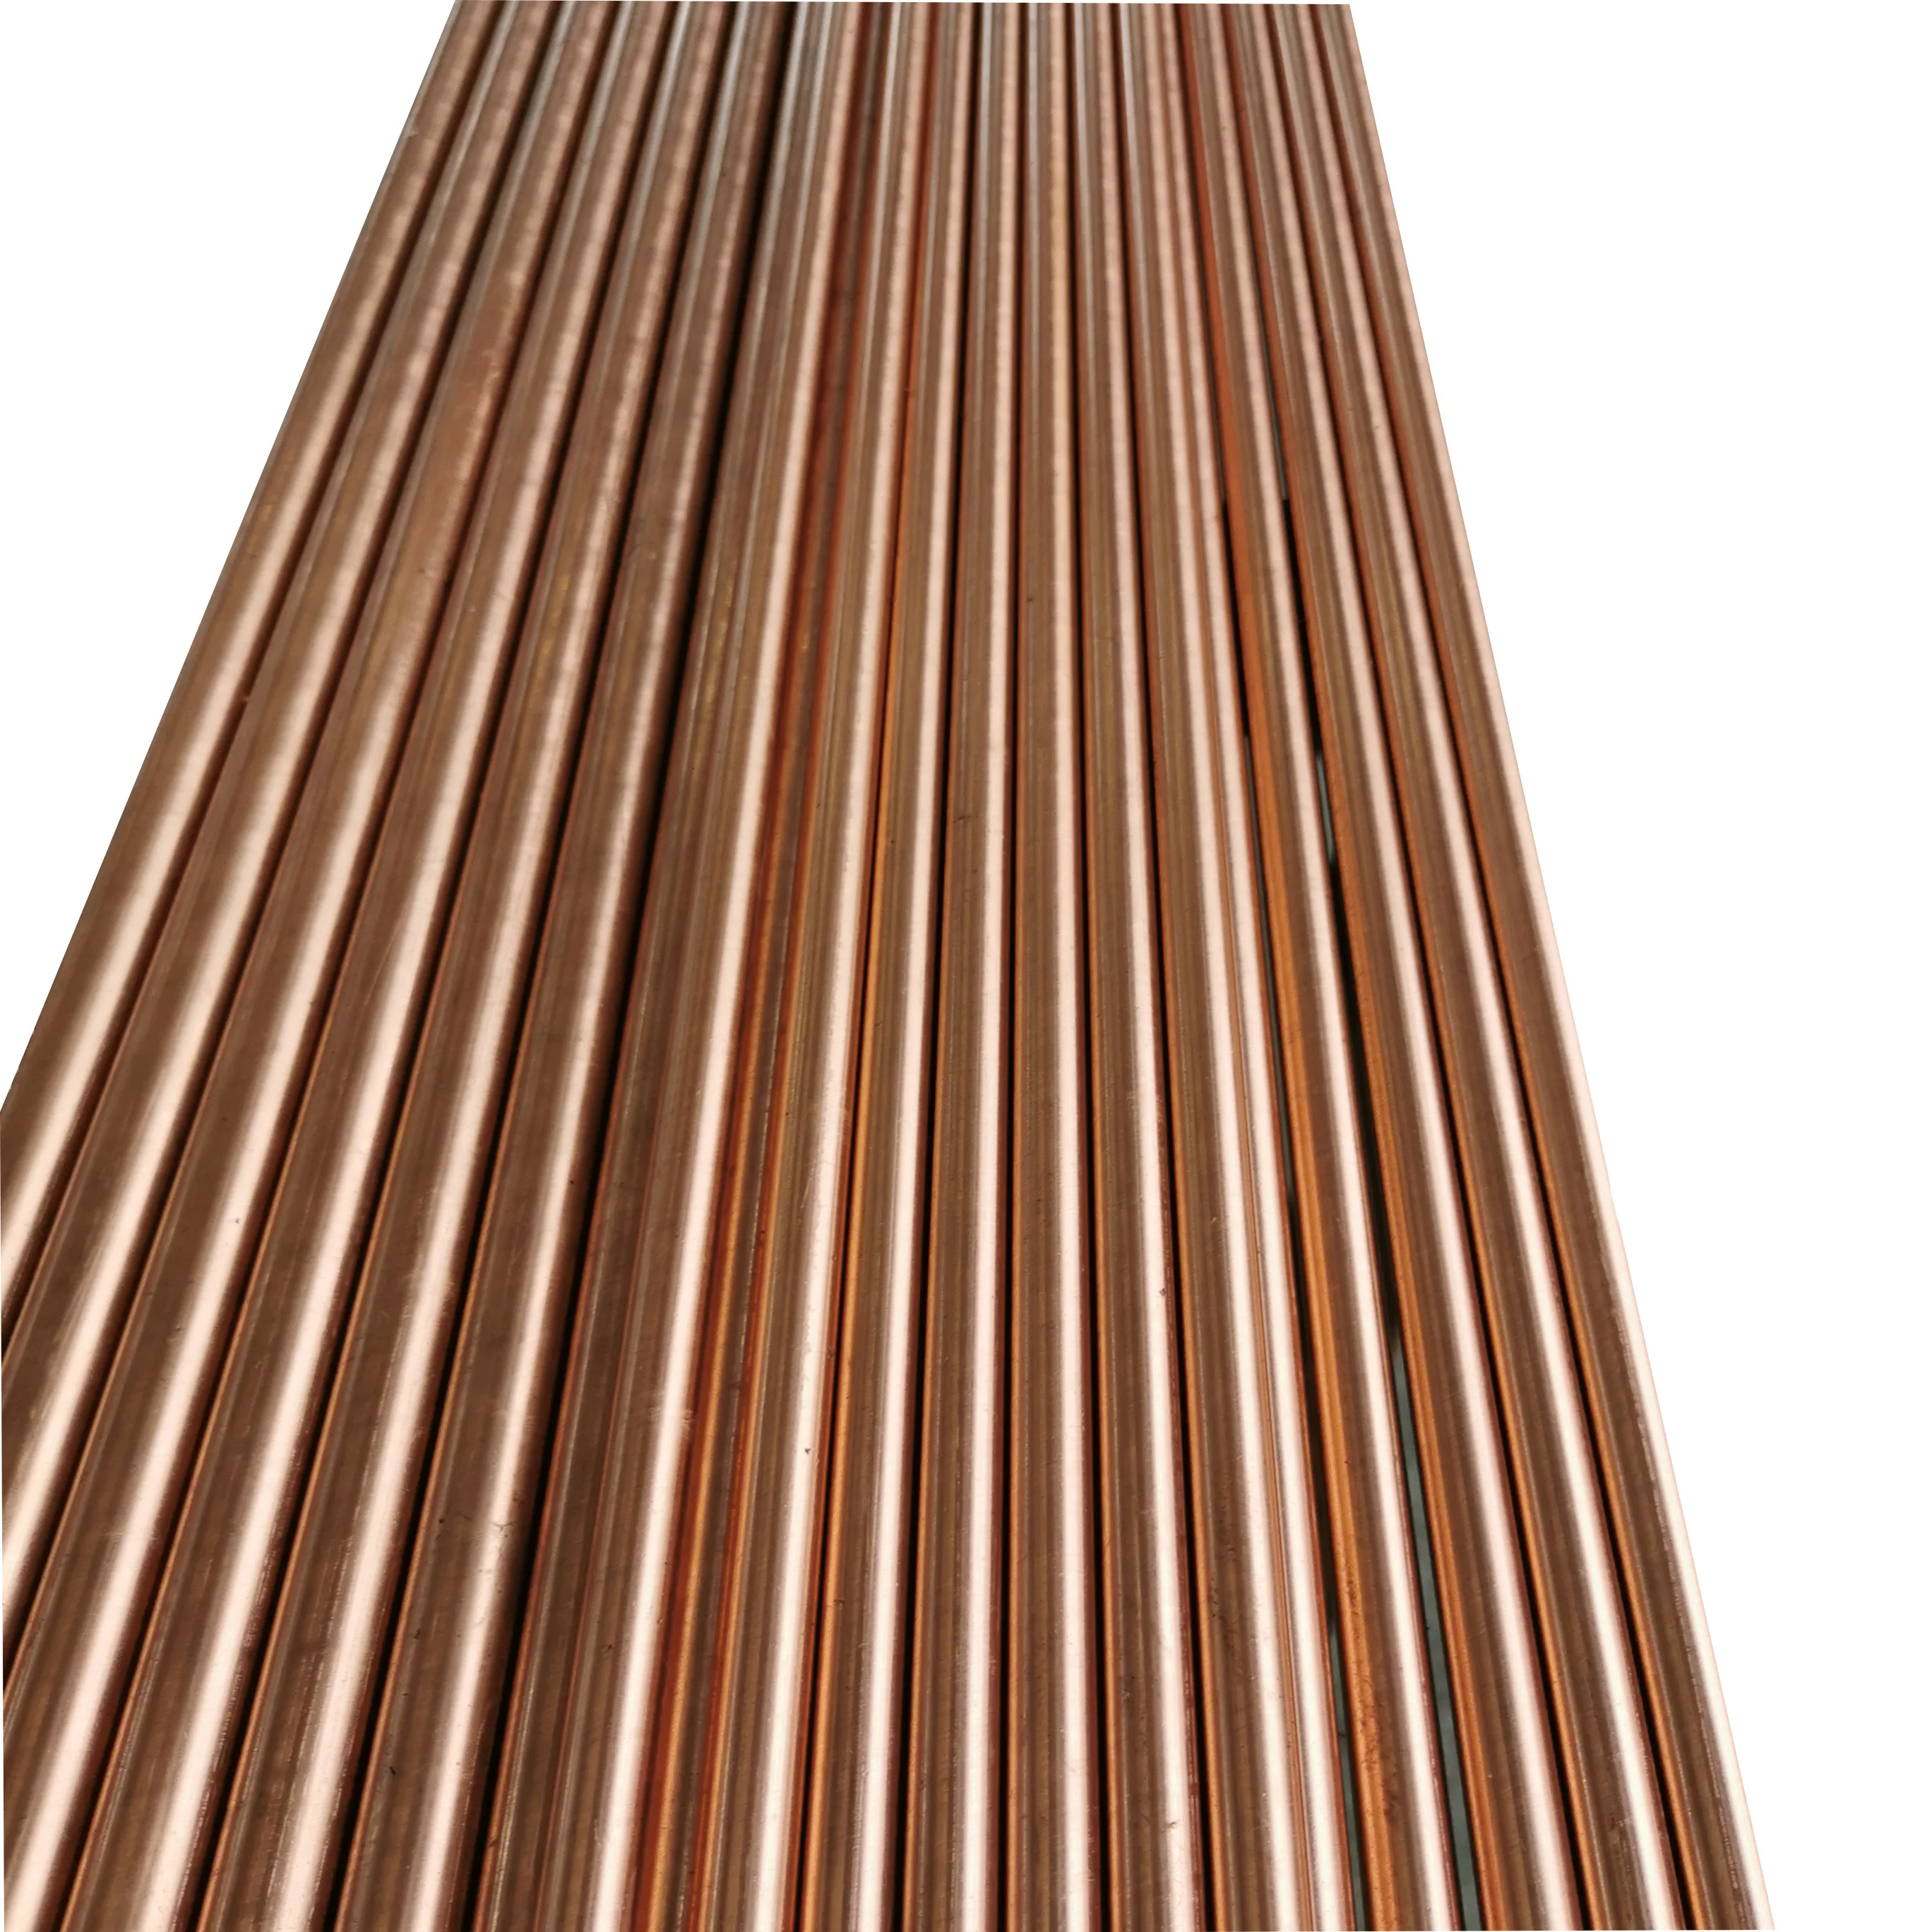 C14500  Tellurium Copper bar rod for New Energy Auto Parts